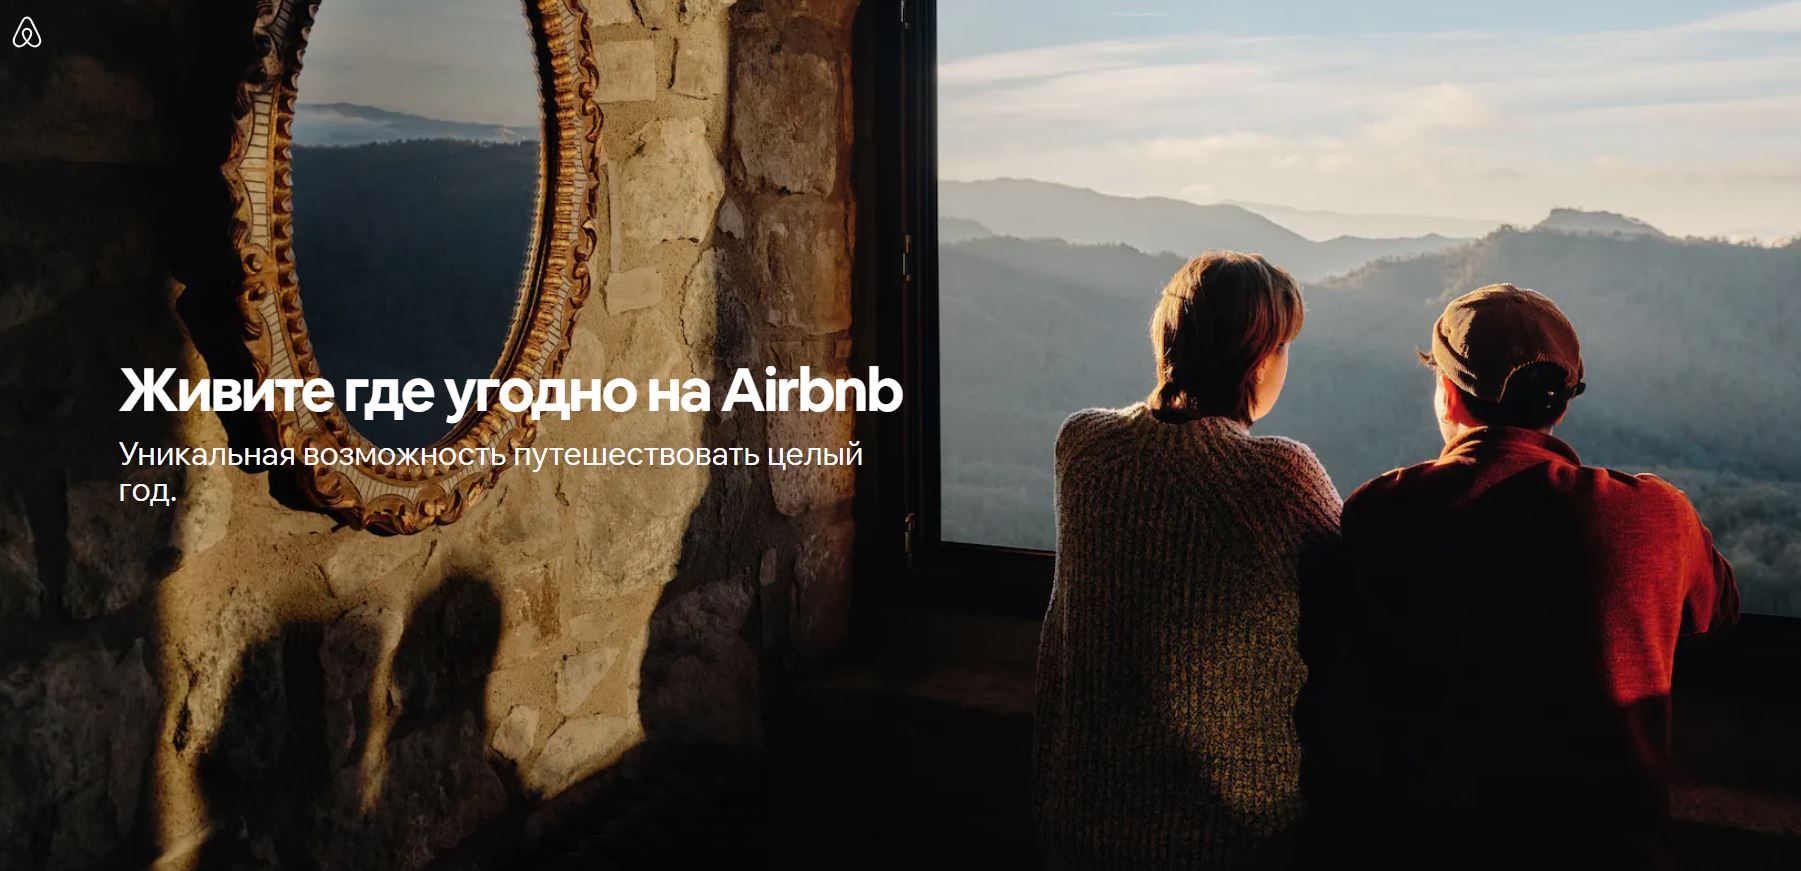 < pran> Airbnb, который живет повсюду в Airbnb, проводит соревнование, и победители могут путешествовать за свой счет в течение года и арендовать жилье. Другими словами, организатор хочет вызвать туристов в местах, которые стали популярными по пандемии.